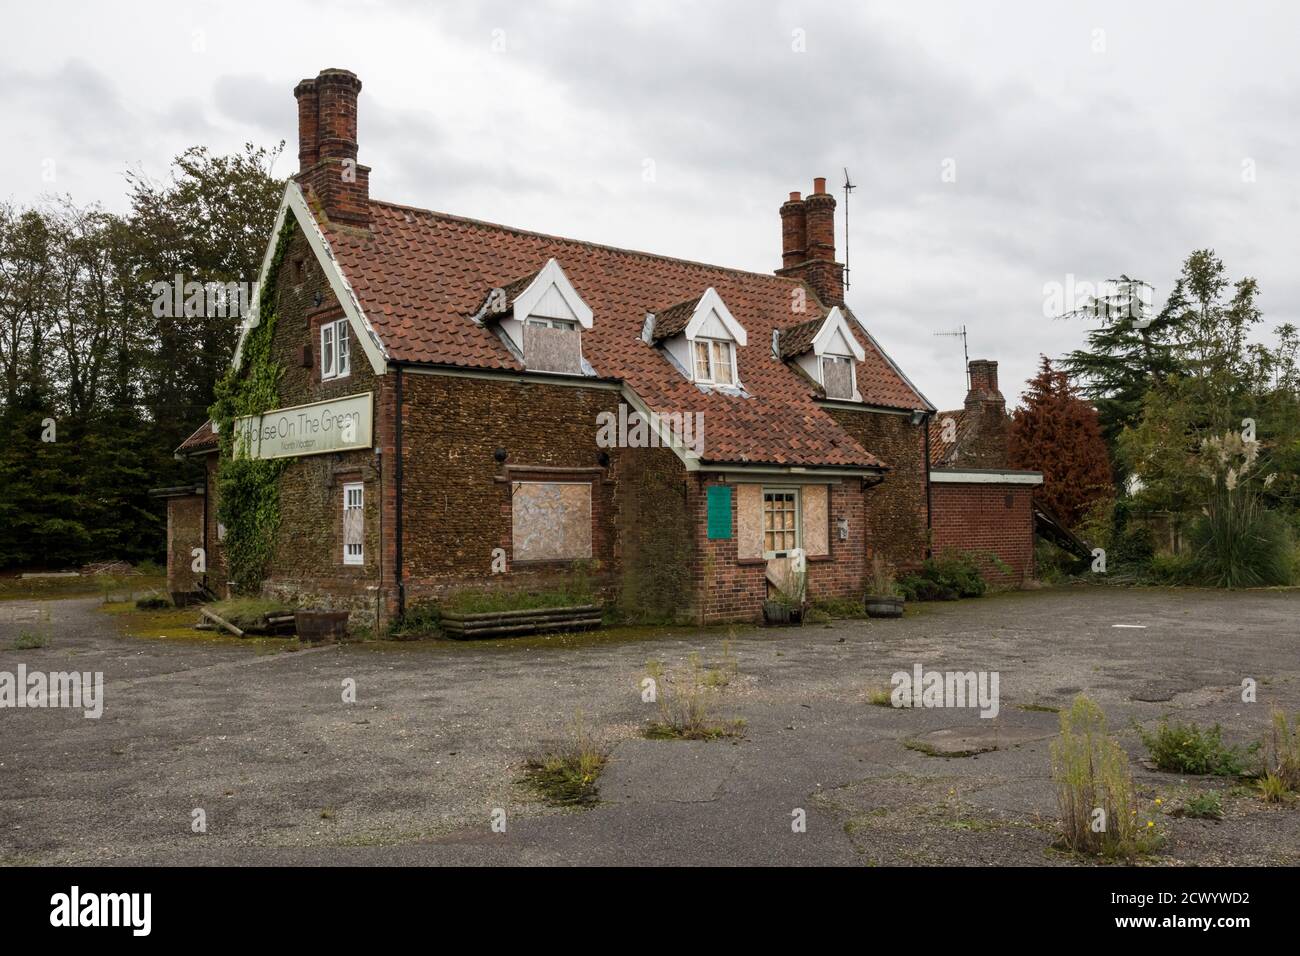 Maison vide et semi-abandonnée sur la maison publique Green à North Wootton, Norfolk. Maintenant l'objet d'une demande de planification pour un développement de logement. Banque D'Images